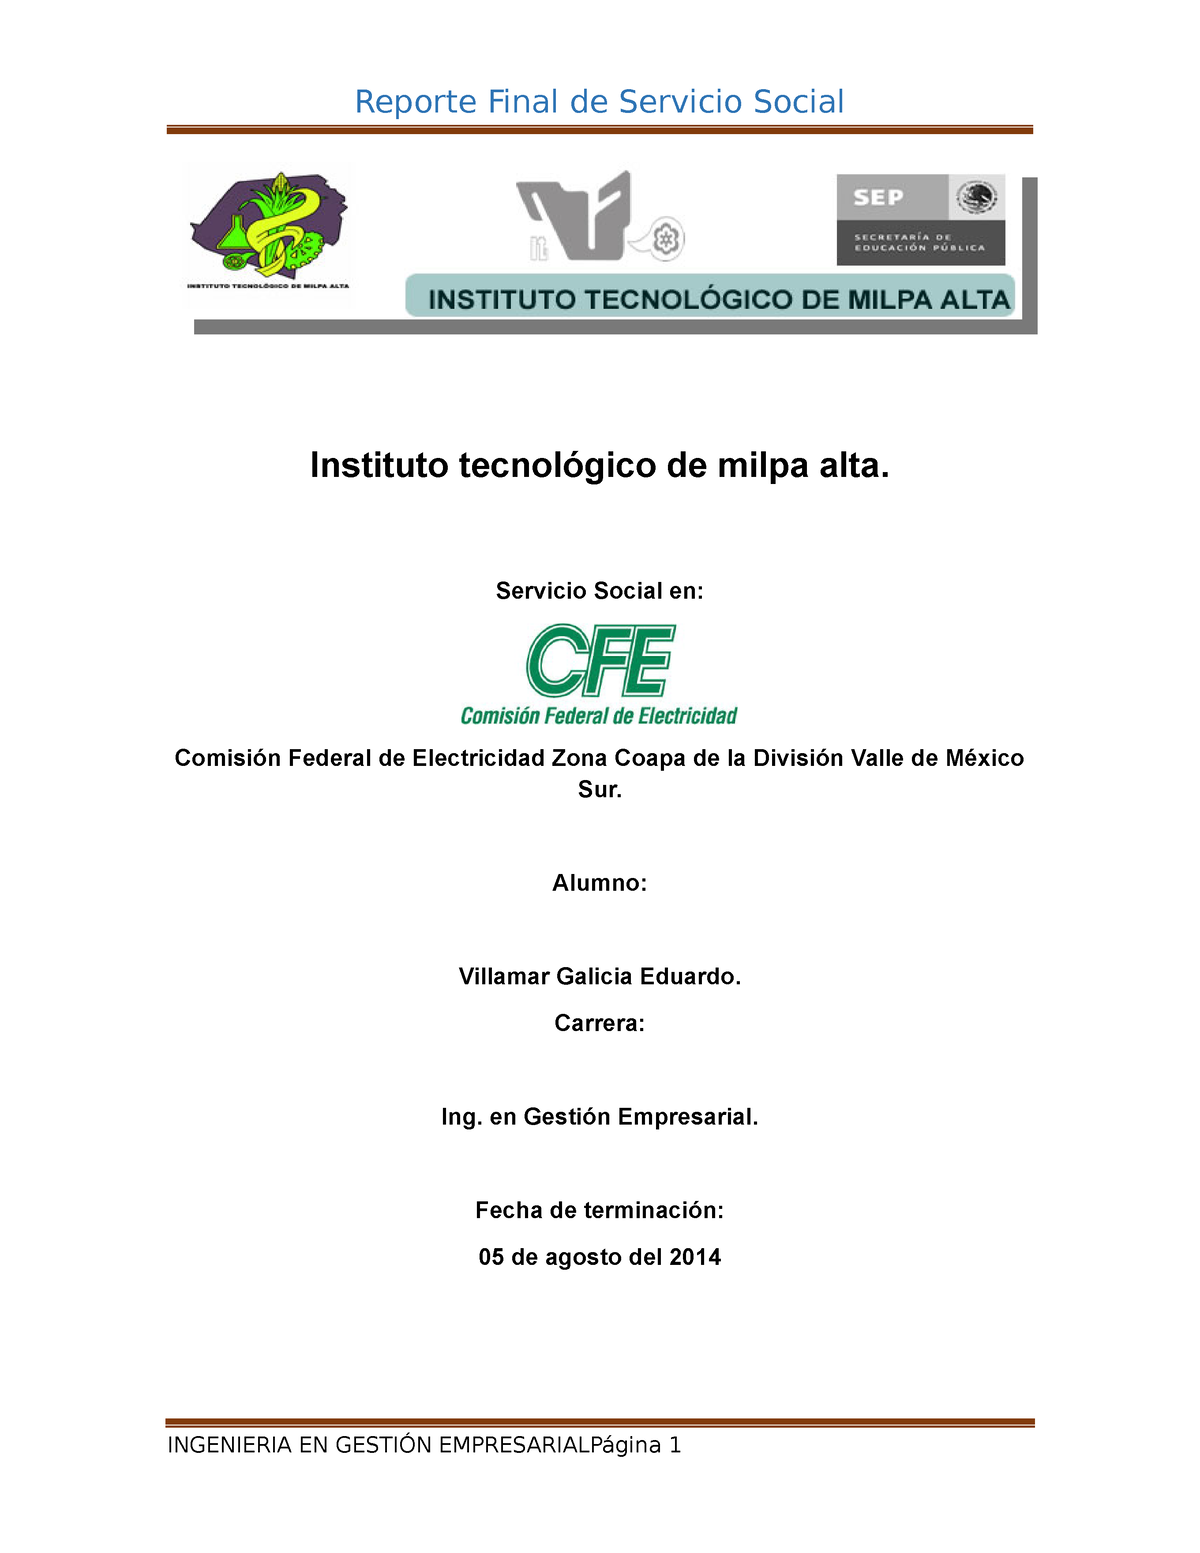 Ejemplo De Reporte Final De Servicio Social Instituto Tecnol Gico De Milpa Alta Servicio